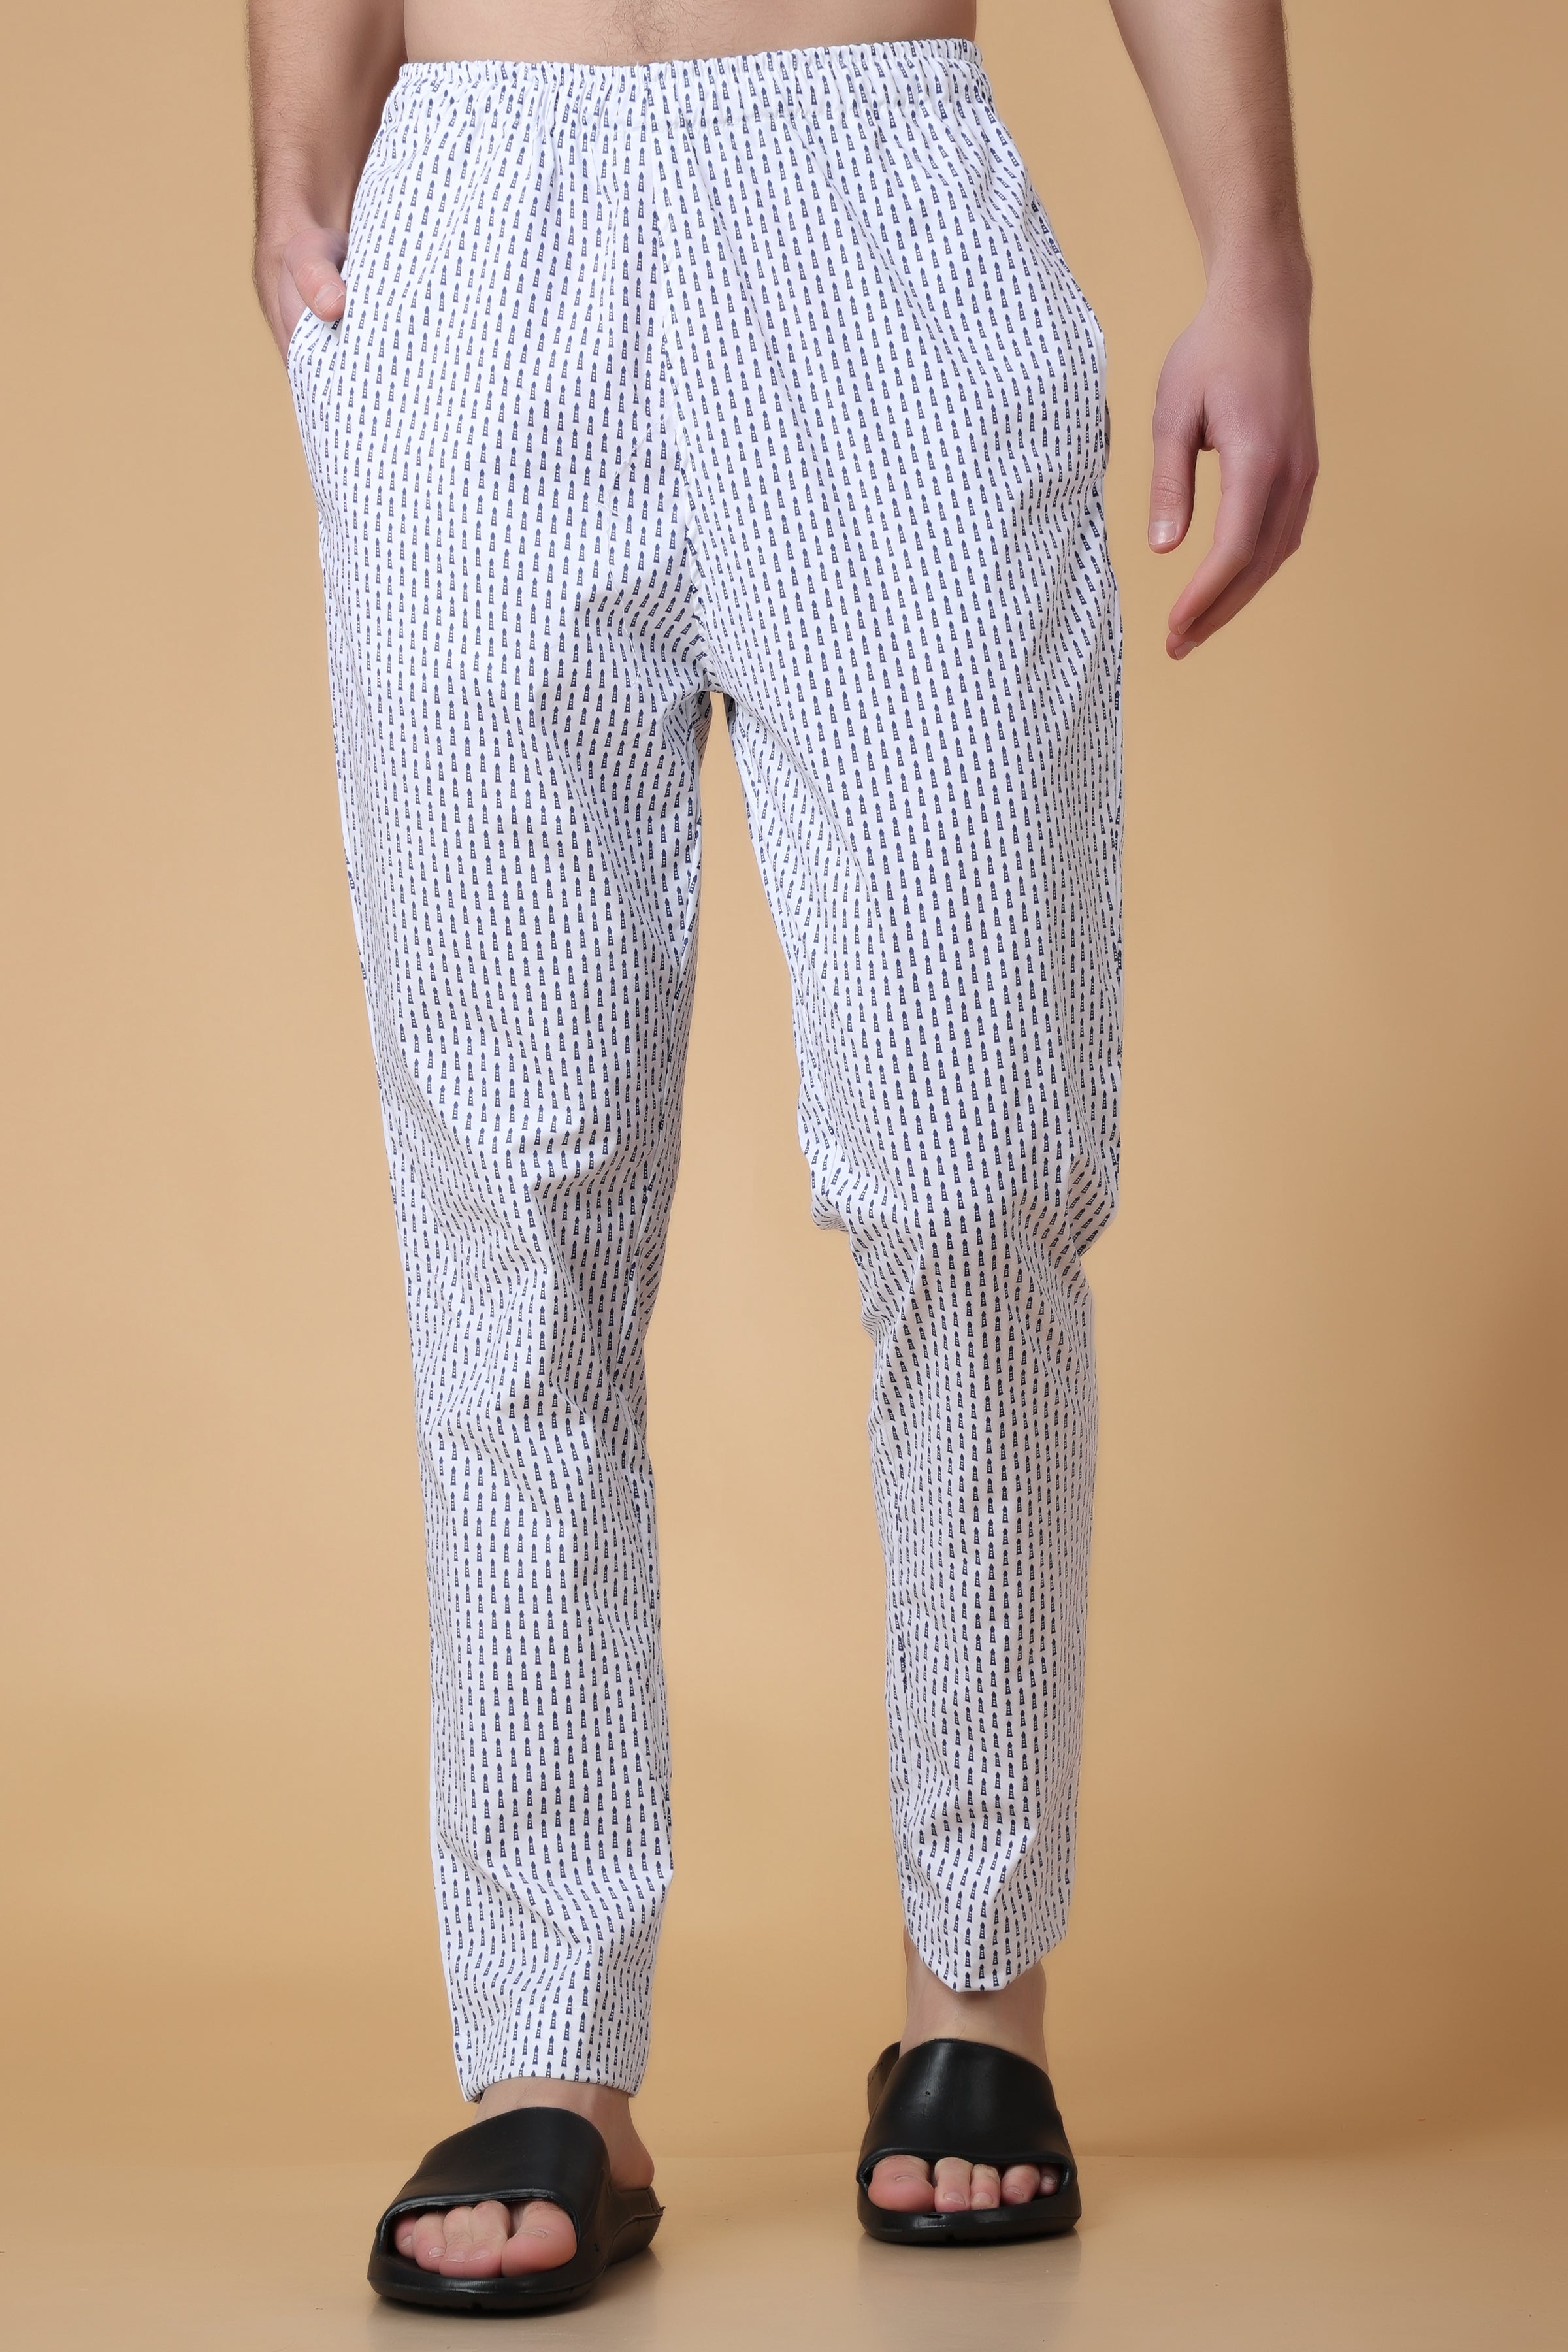 Mens Character Lounge Pants Pyjama Bottoms Jersey Cotton Drawstring Cuffed  S-3XL | eBay